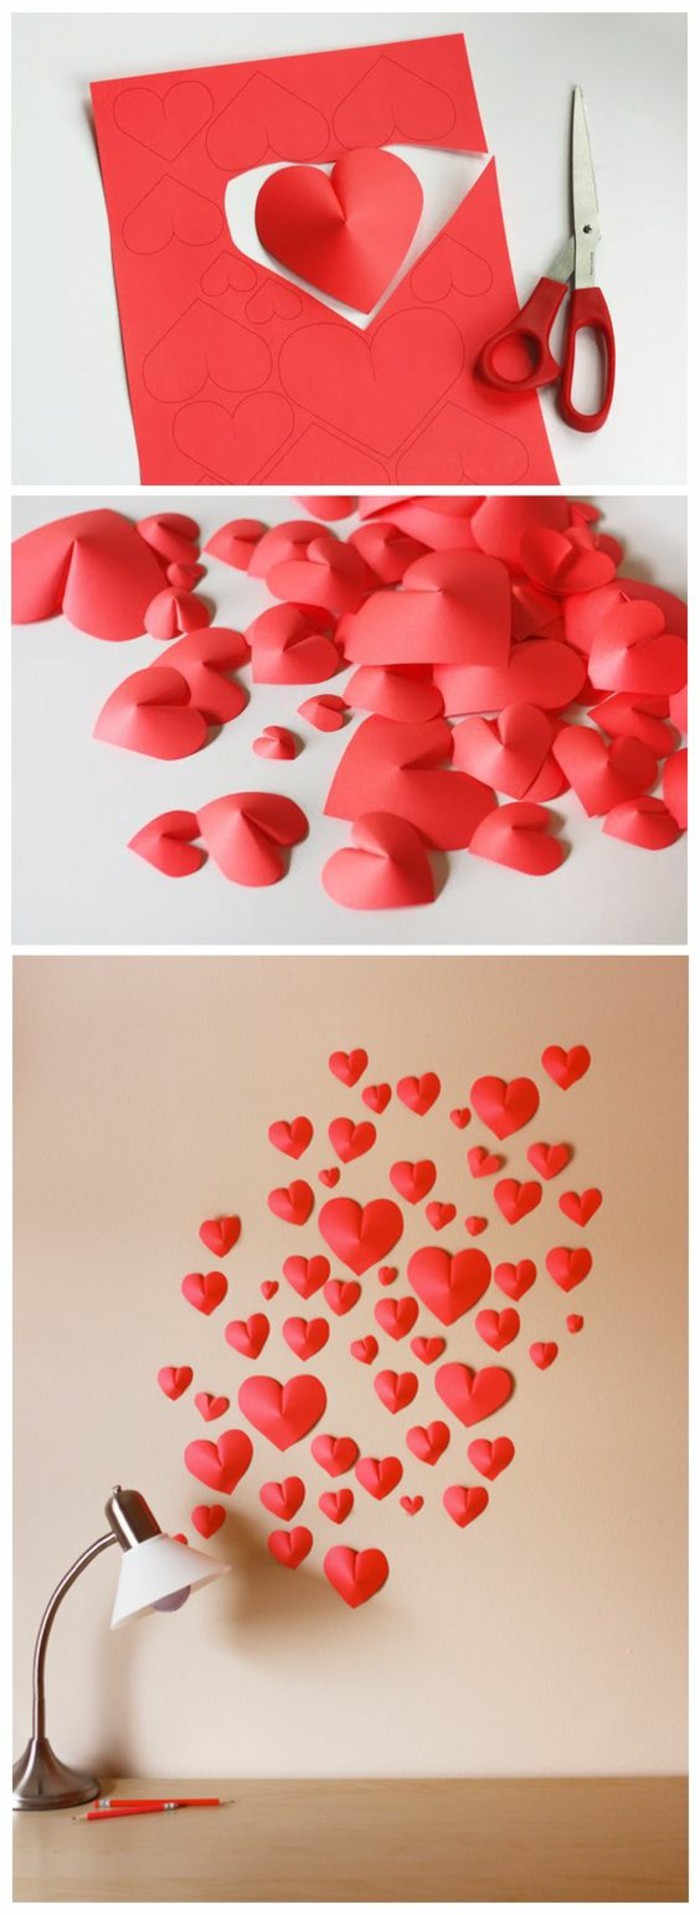 4-wanddeko magad-make-fali dekoráció-ötletek-3d-vörös szív a papír